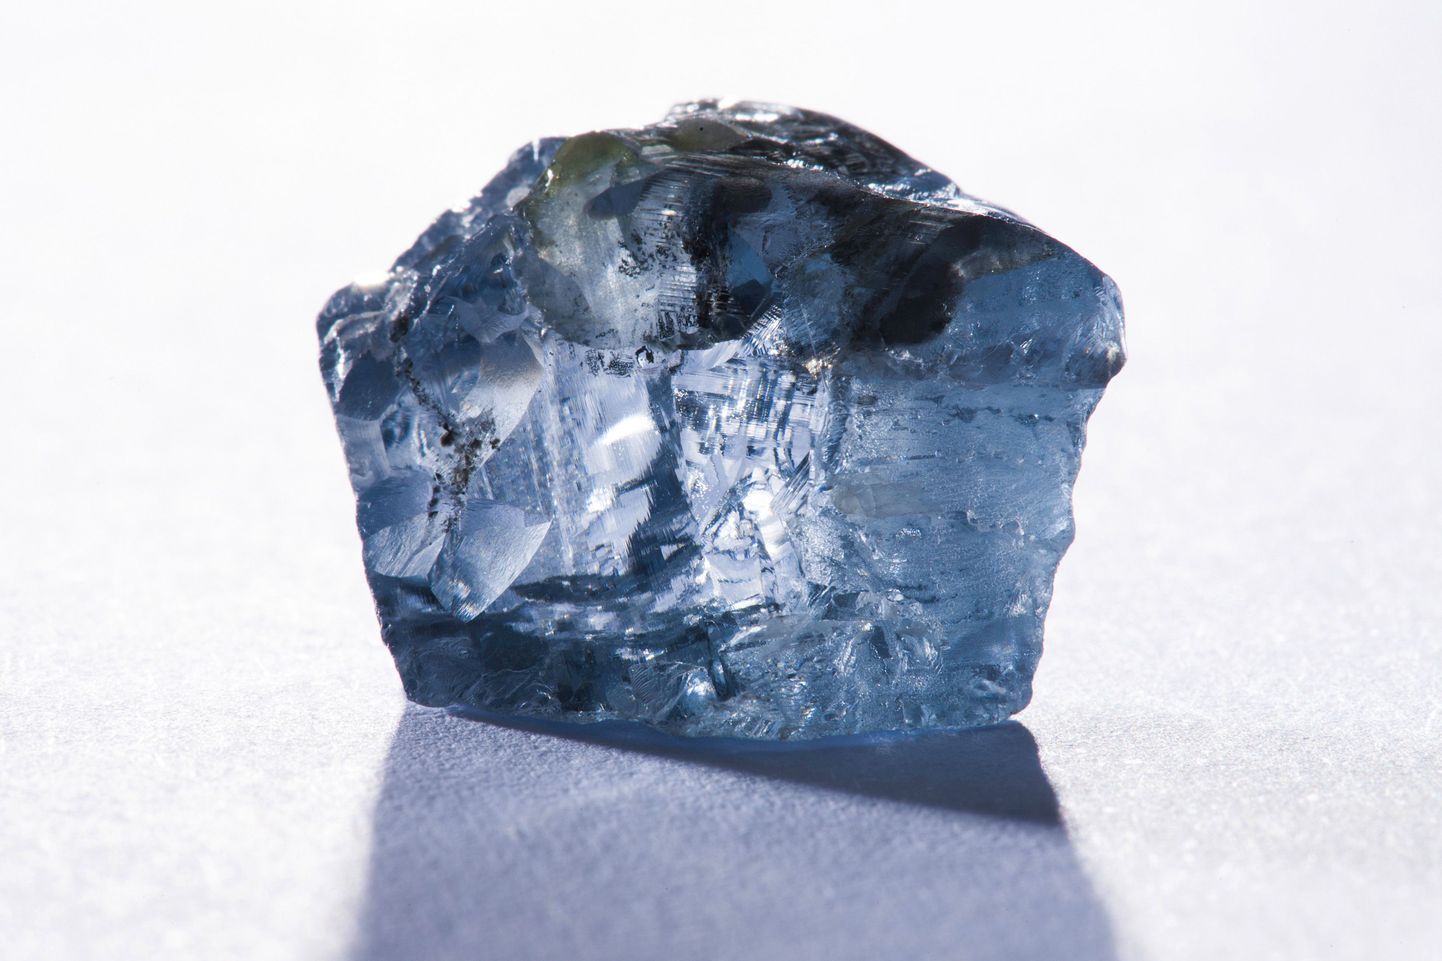 Sinine teemant